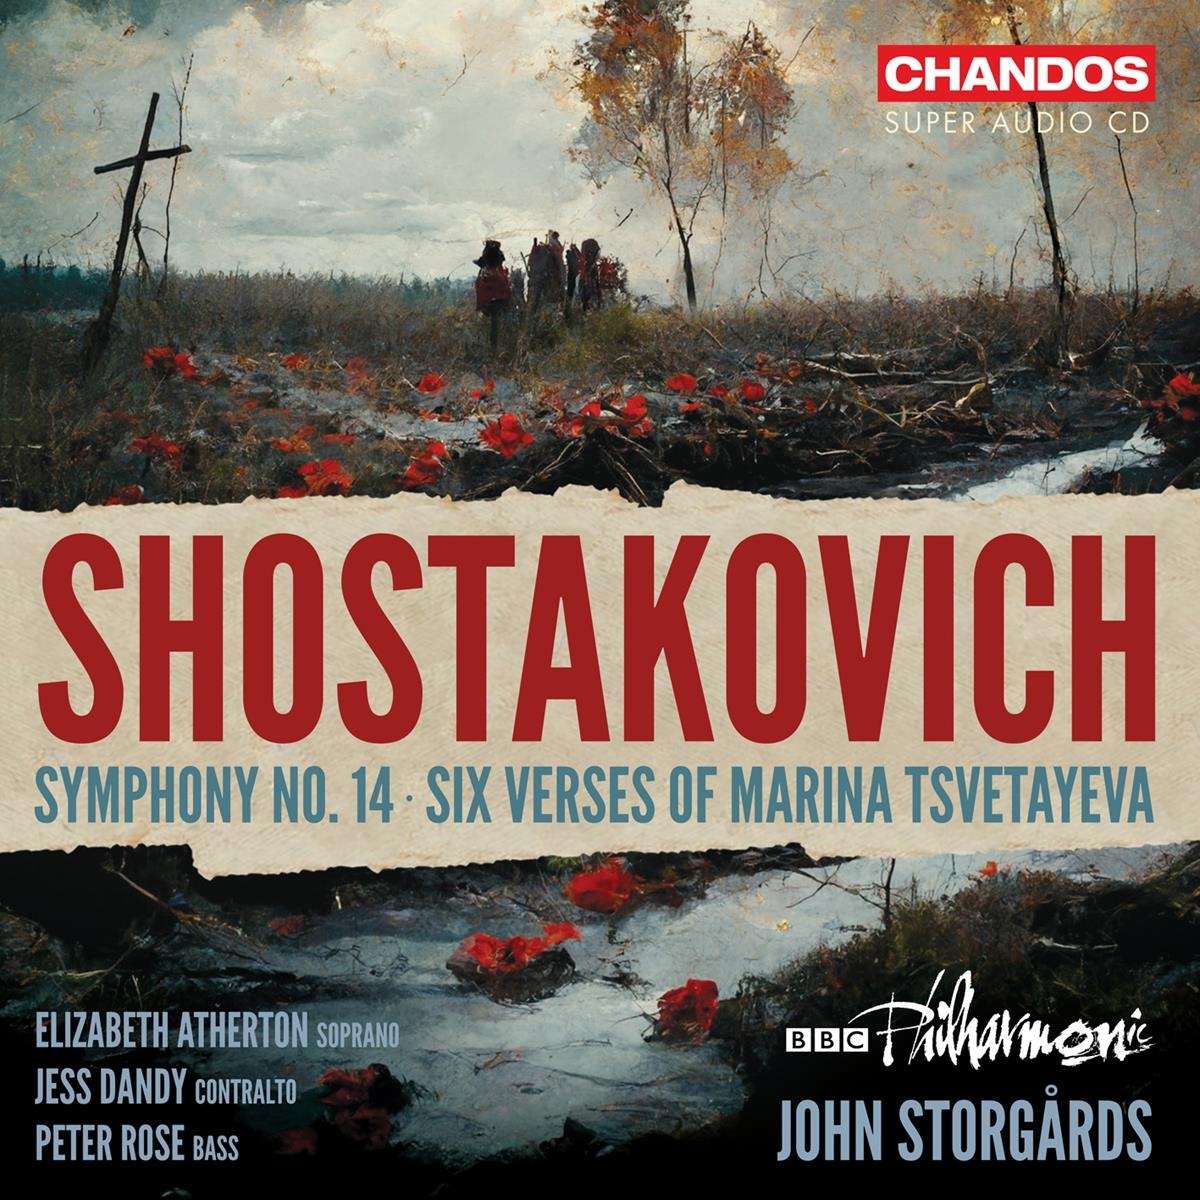 Bbc Philharmonic / John Storgards - Shostakovich Symphony No. 14/Six Verses of Marina Tsvetayeva